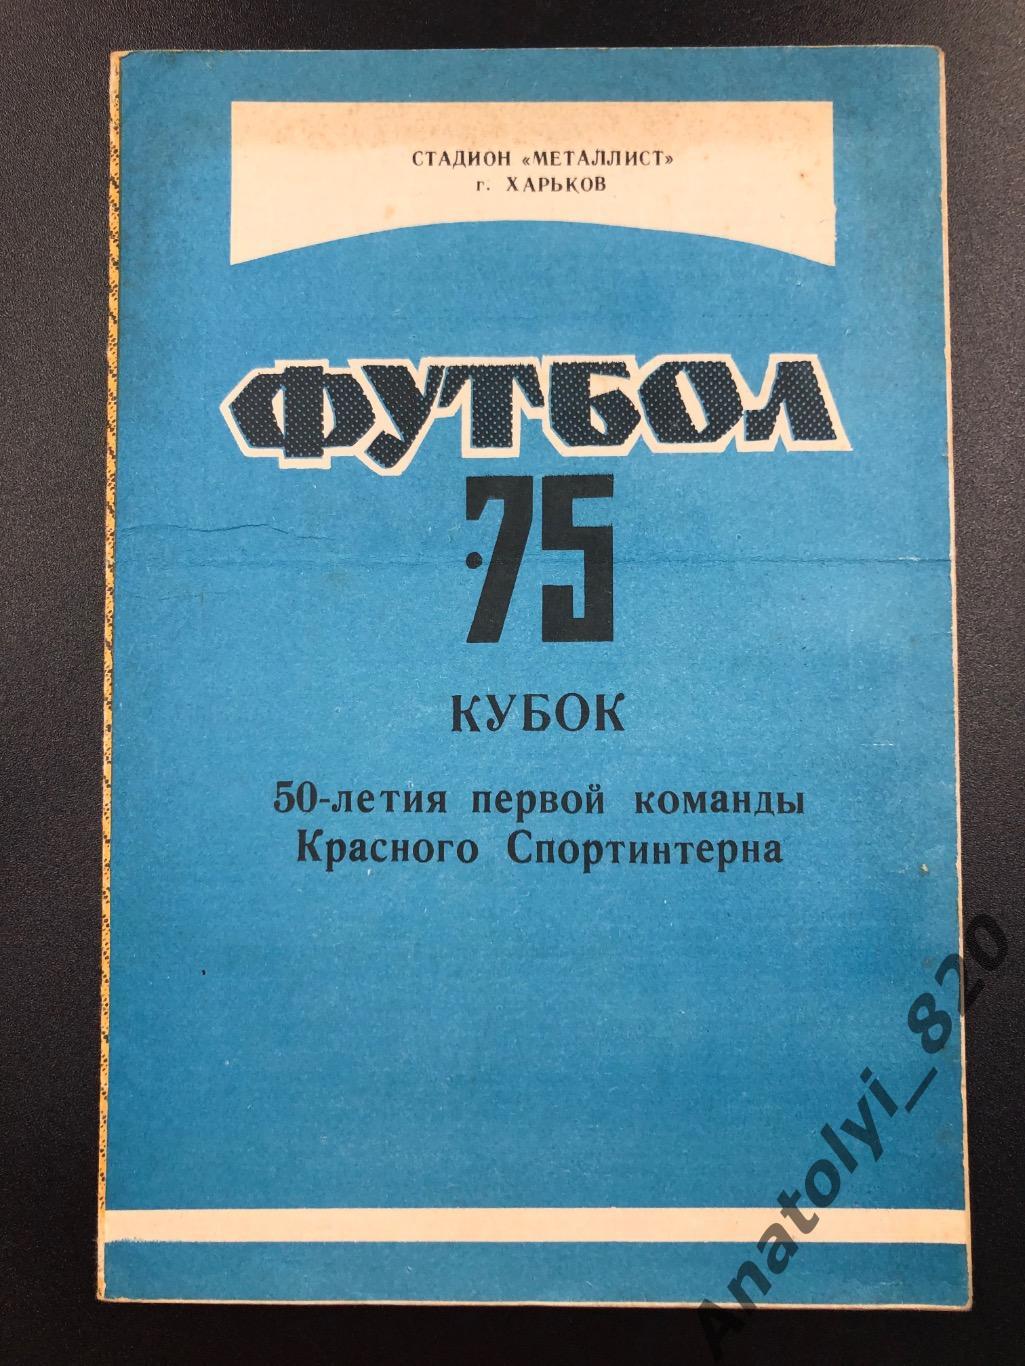 Харьков 1975 год, буклет 50-летия первой команды Красного Спортинтерна